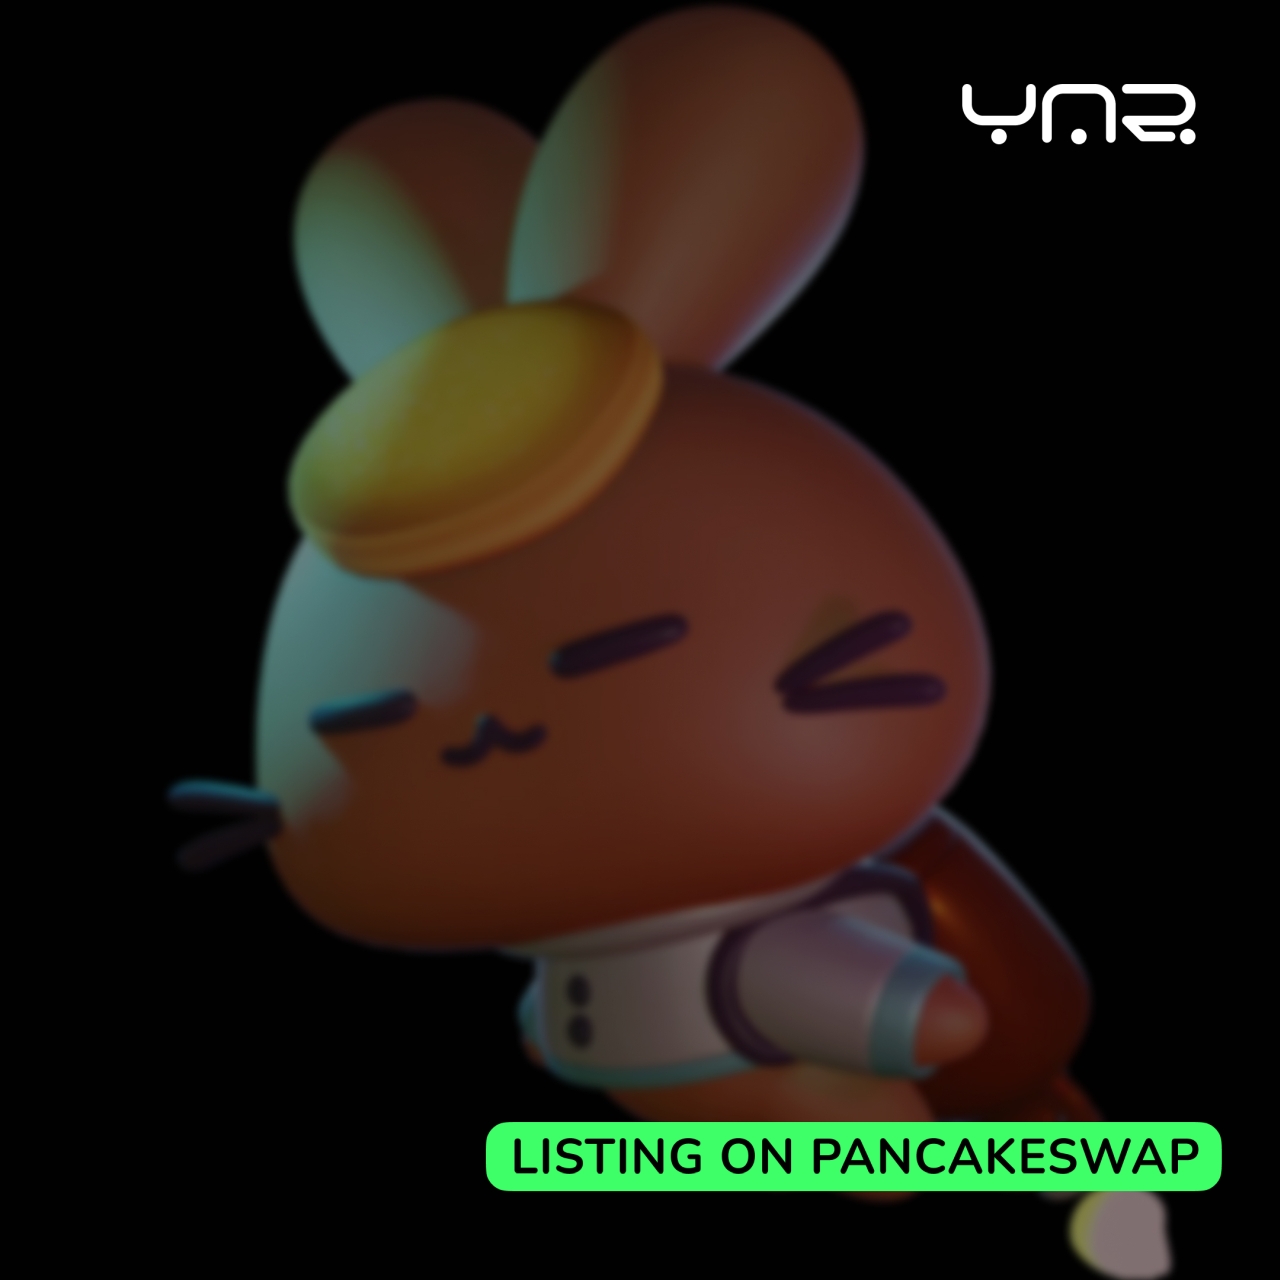 фото: YAR - начало торгов на PancakeSWAP